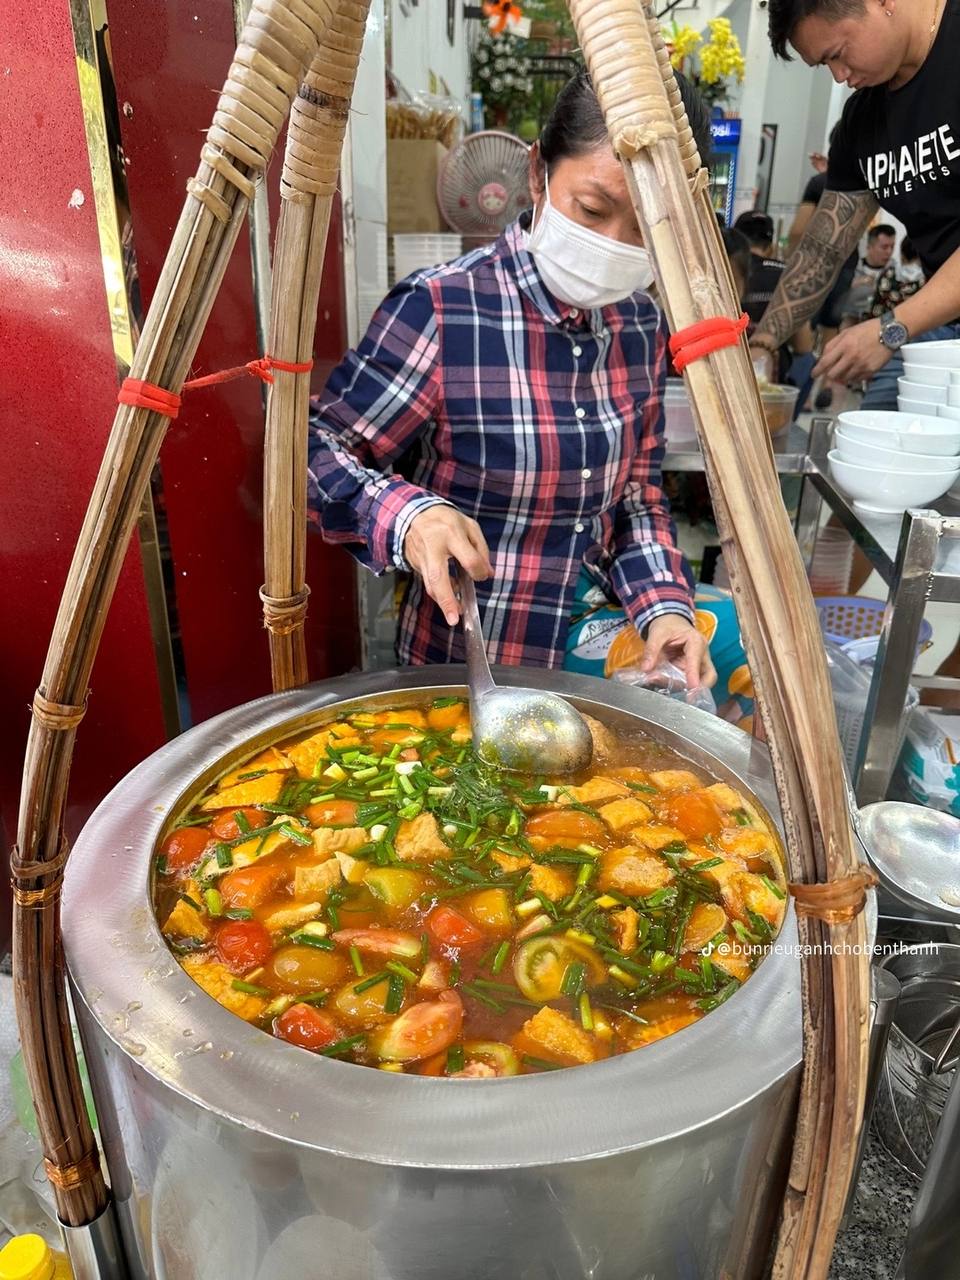 3 quán ngon khu chợ Bến Thành nức tiếng gần xa: Tiệm bánh bèo bán hơn 1.000 đĩa/ngày, hàng bún riêu “sang chảnh” nhiều nghệ sĩ nghe danh ghé ăn - ảnh 11